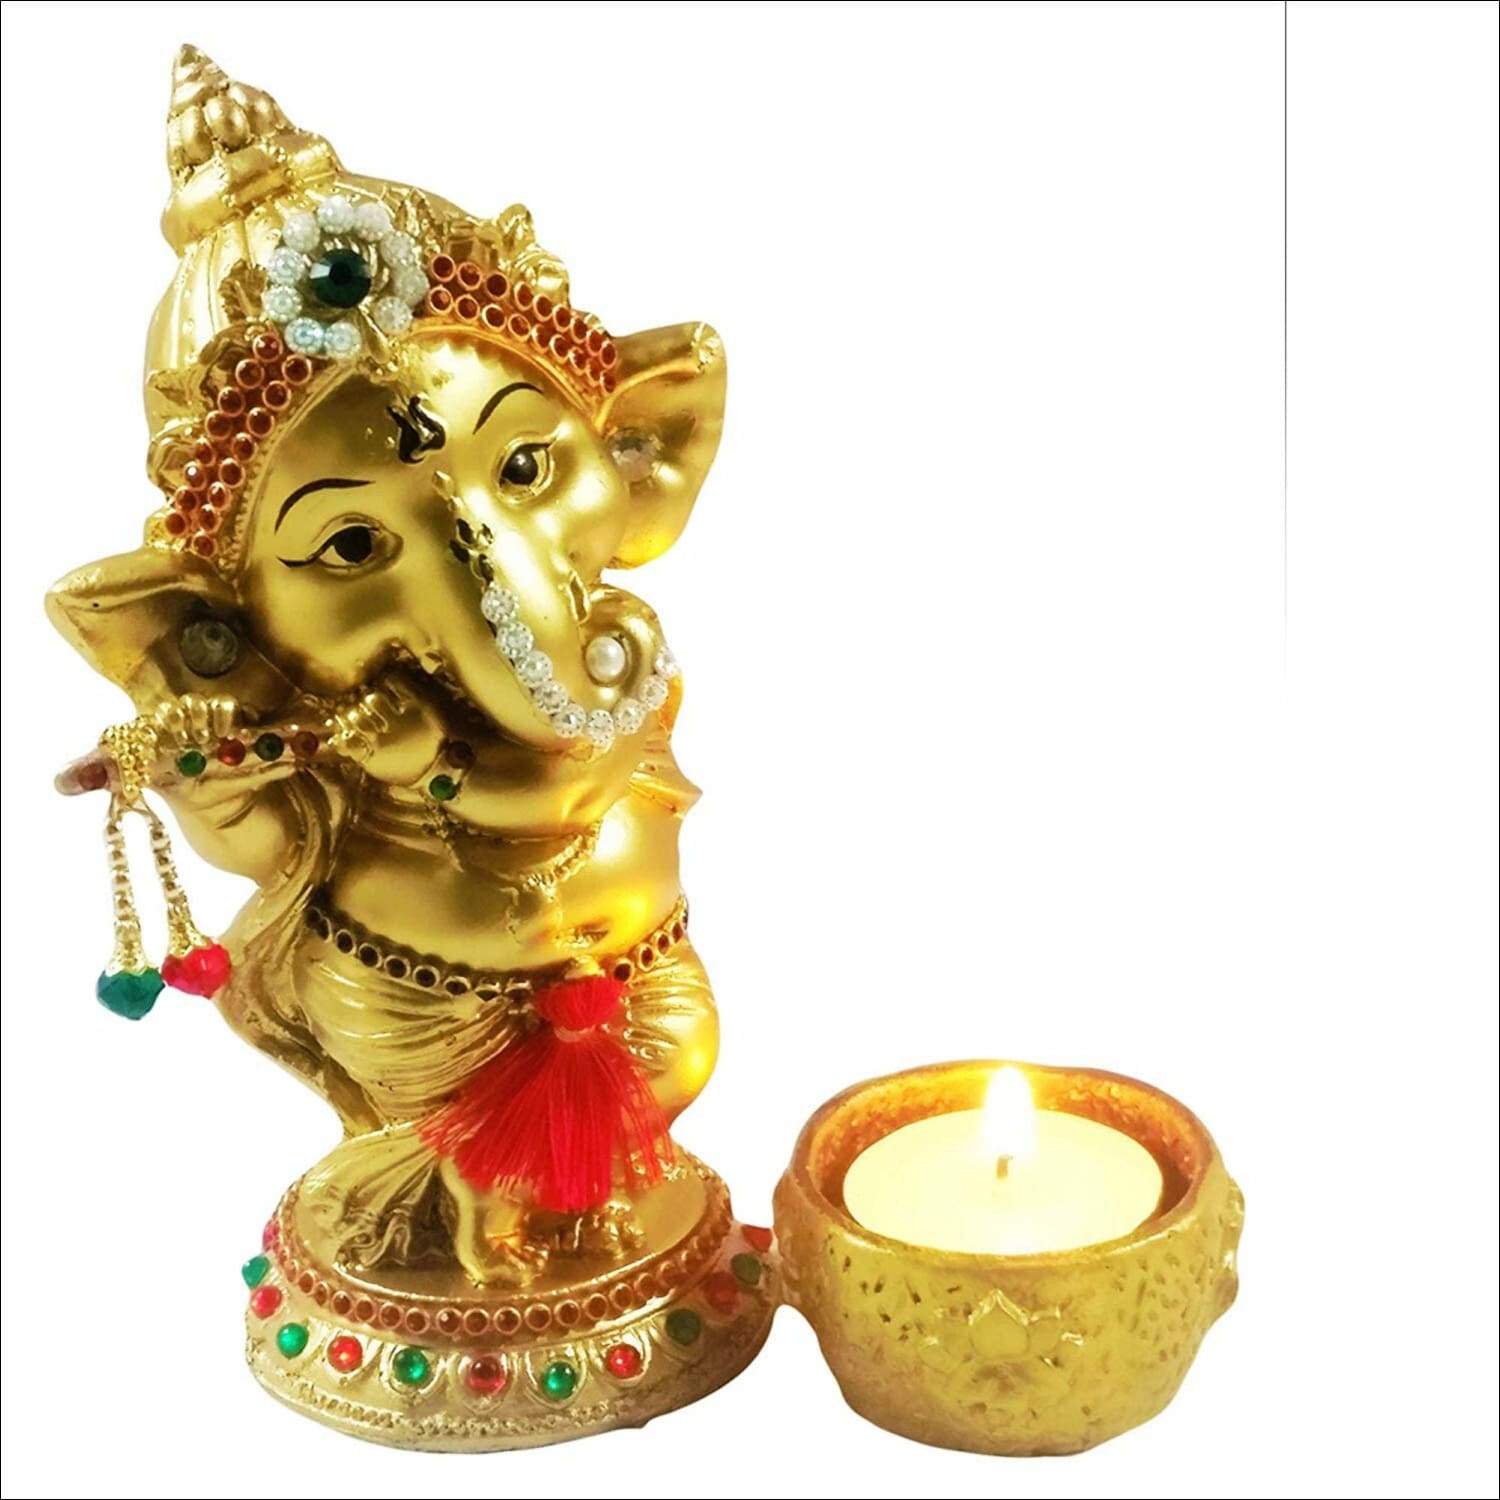 Lord Ganesha Playing Bansuri Idol with Diya for Home (9.5 cm x 6.5 cm x 15 cm, Gold)